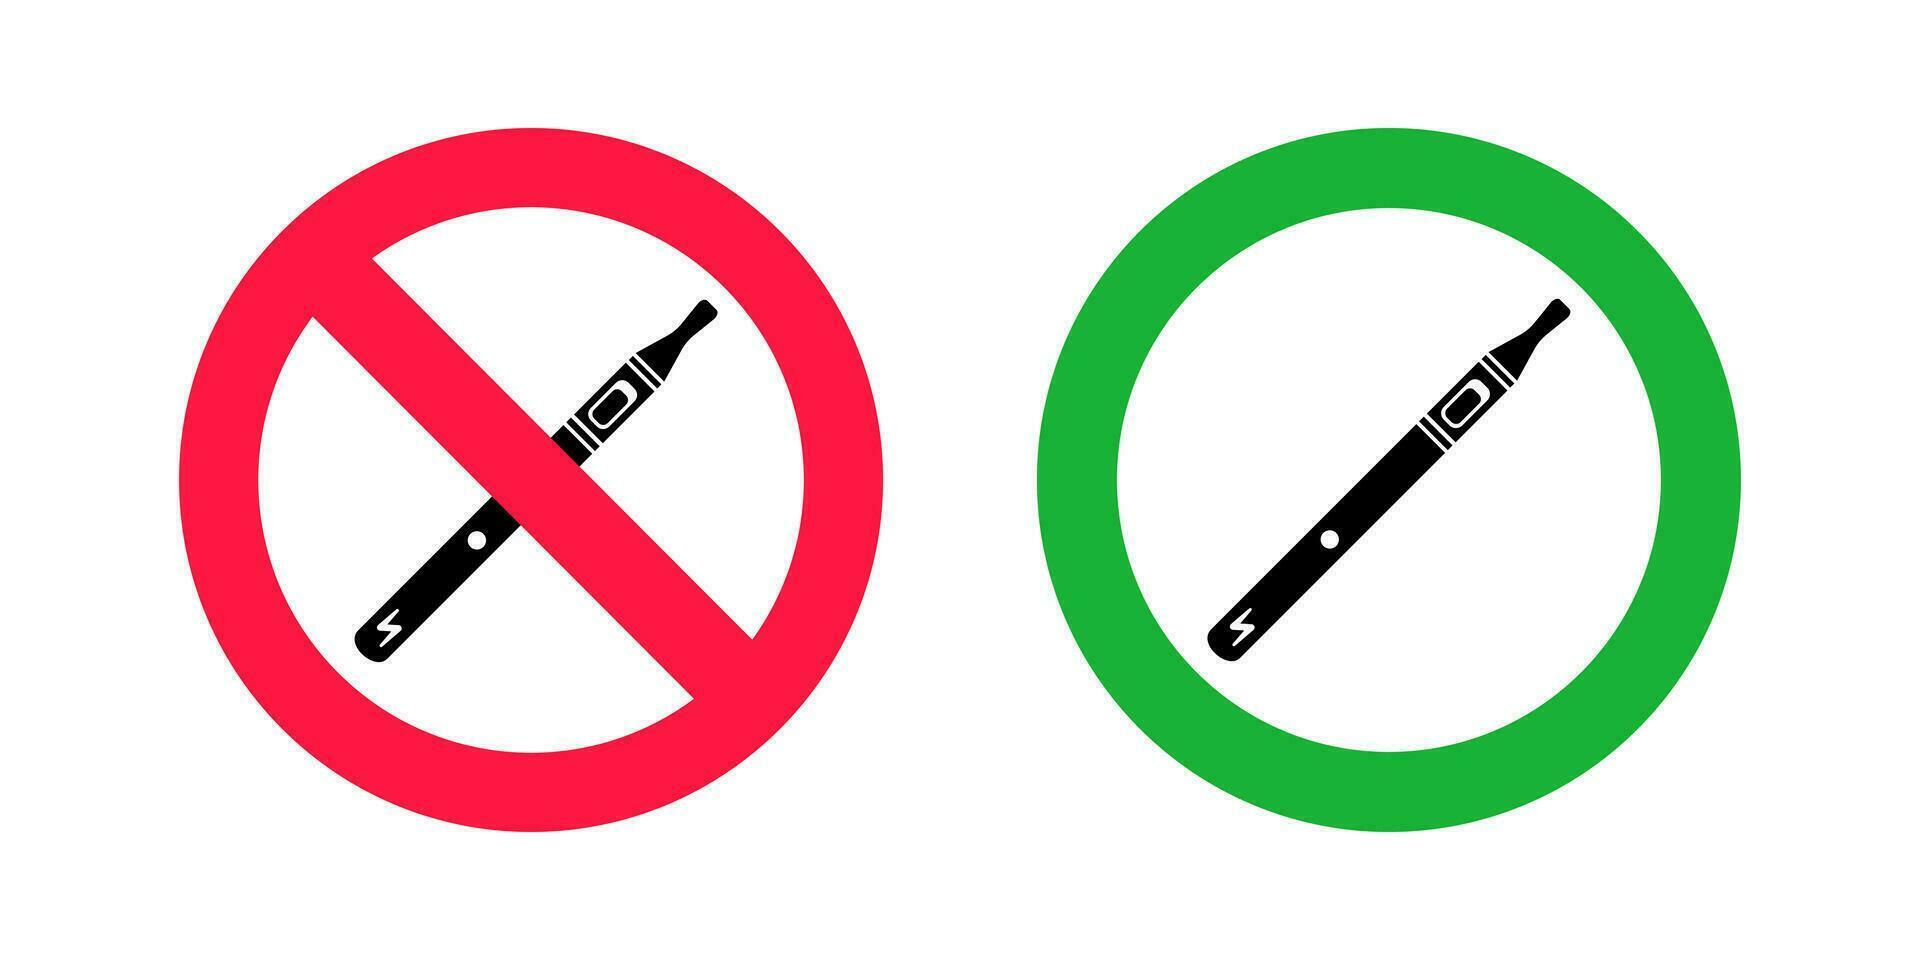 No vaping y vaping zona señales. rojo prohibido y verde permitido círculos señales vector